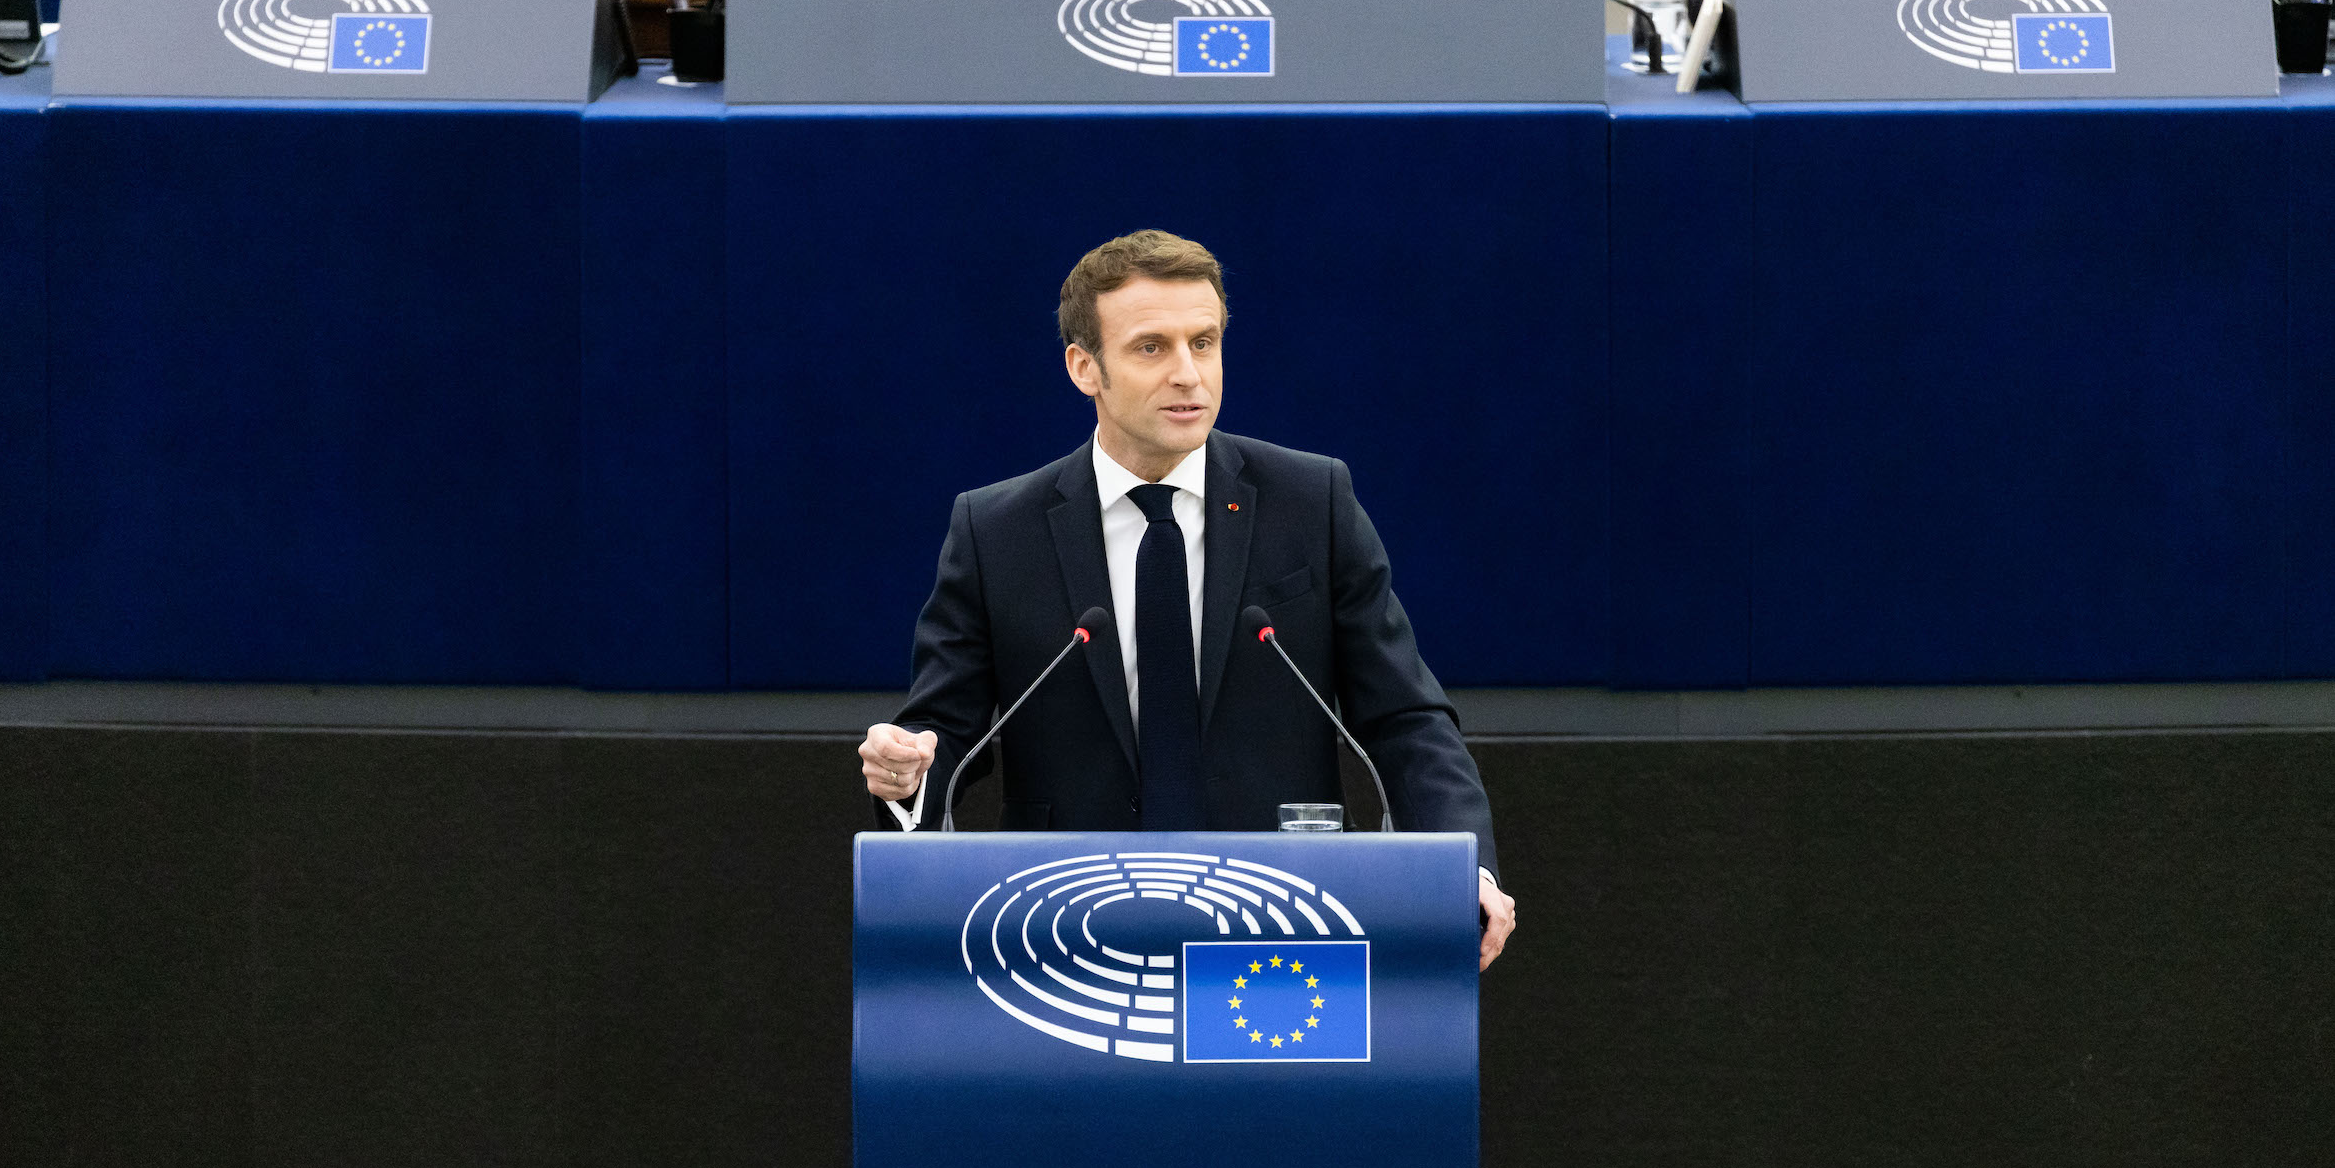 A Strasbourg, Emmanuel Macron fait l'éloge d'une Europe souveraine et protectrice